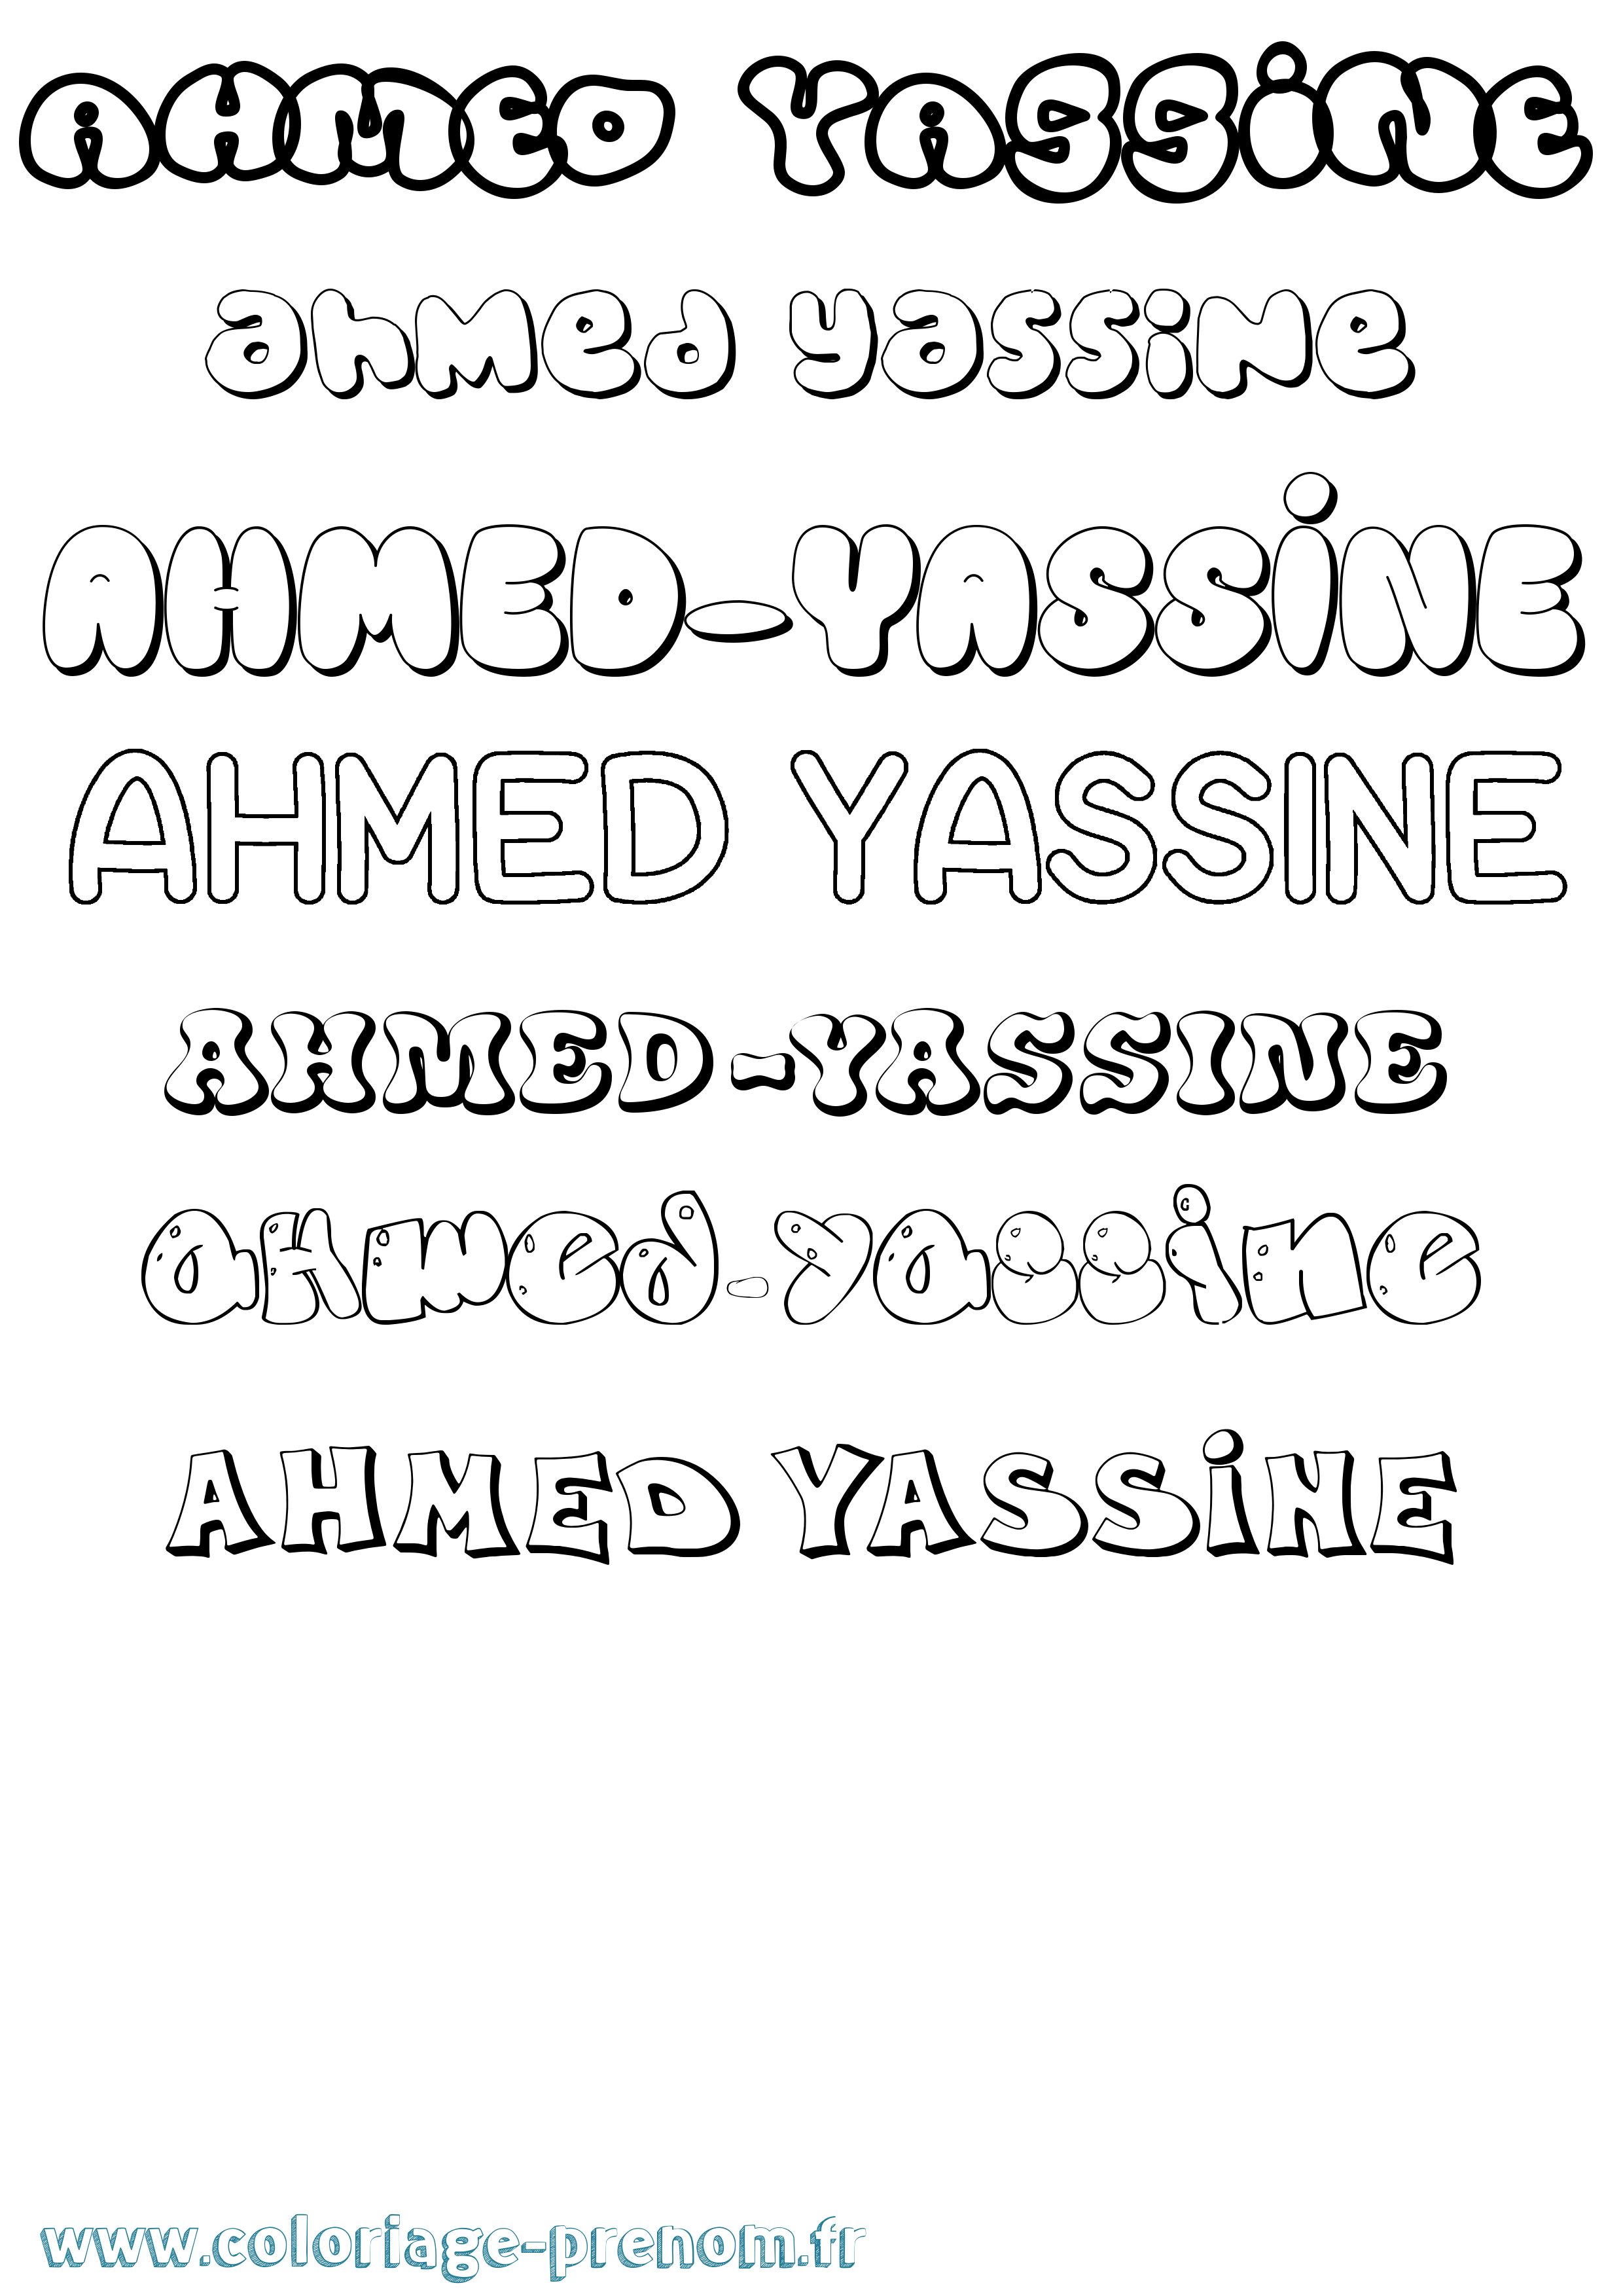 Coloriage prénom Ahmed-Yassine Bubble